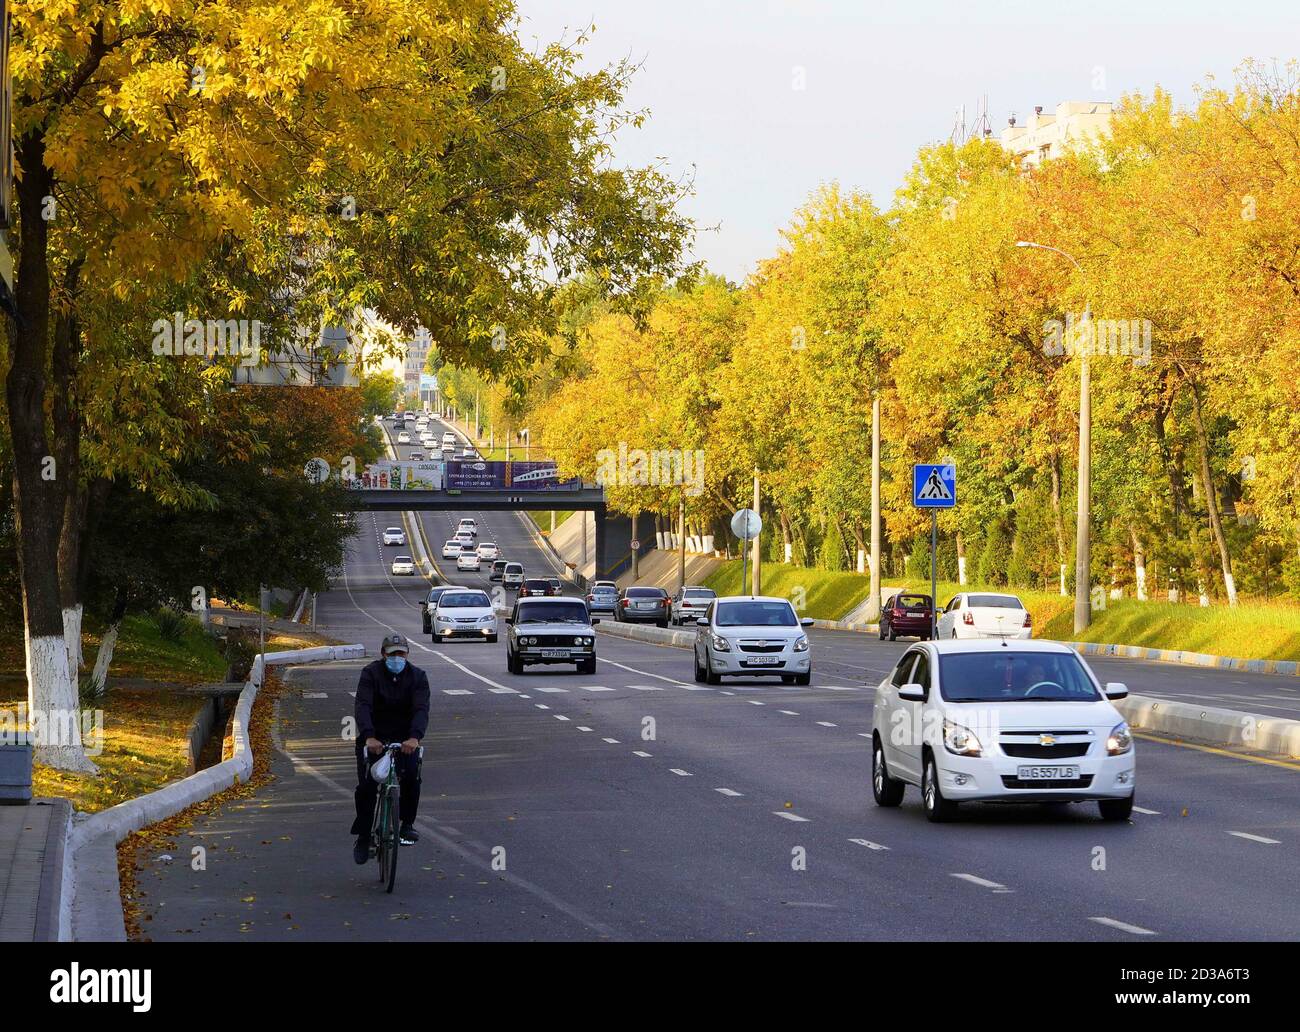 (201008) --TASHKENT, 8 de octubre de 2020 (Xinhua) -- Foto tomada el 6 de octubre de 2020 muestra una vista otoñal de Tashkent, Uzbekistán. (Foto de Zafar Khalilov/Xinhua) Foto de stock